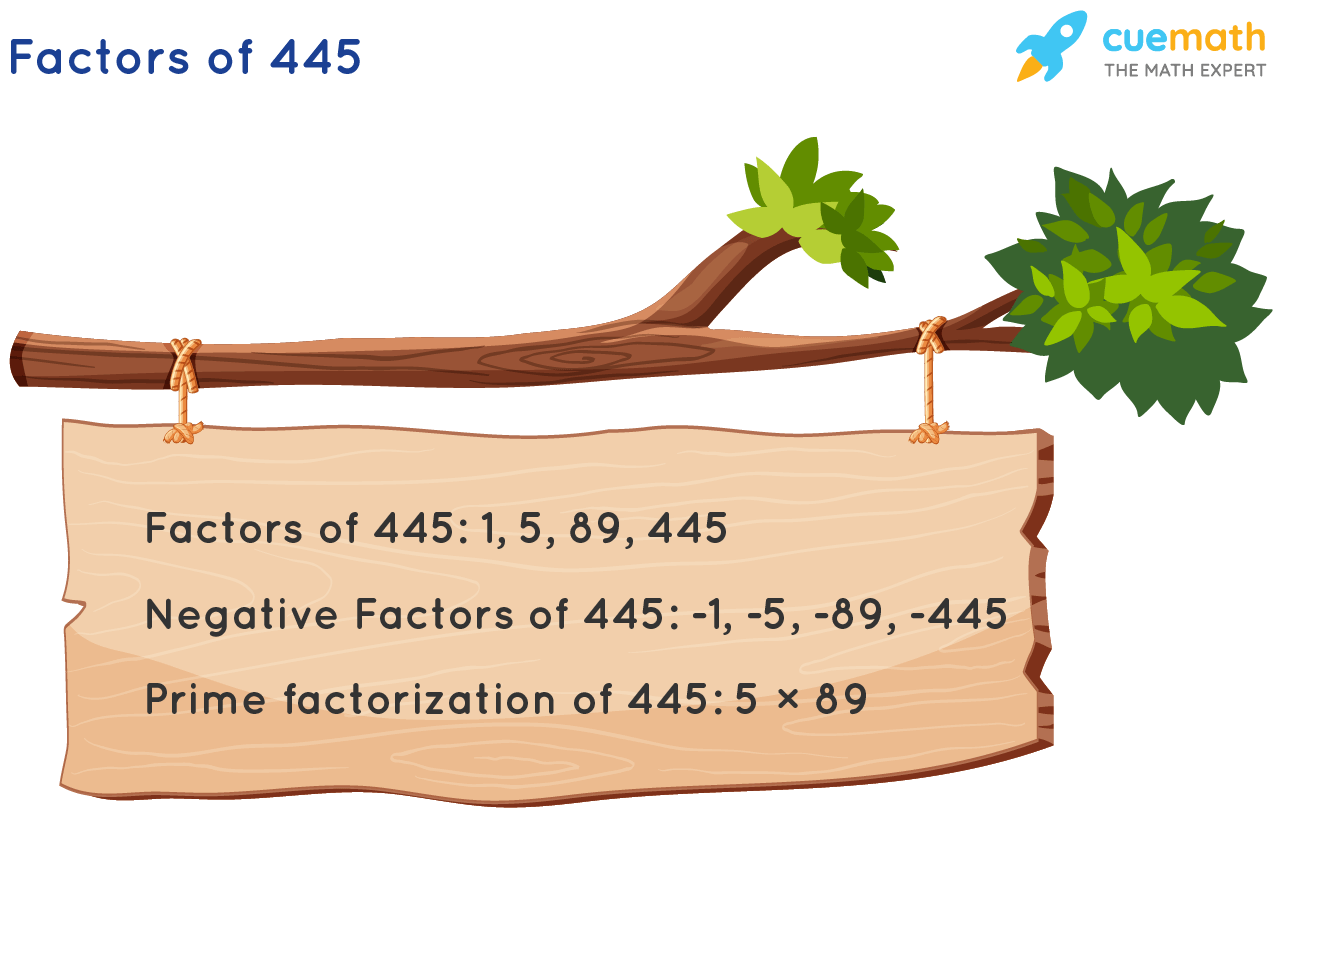 Factors of 445